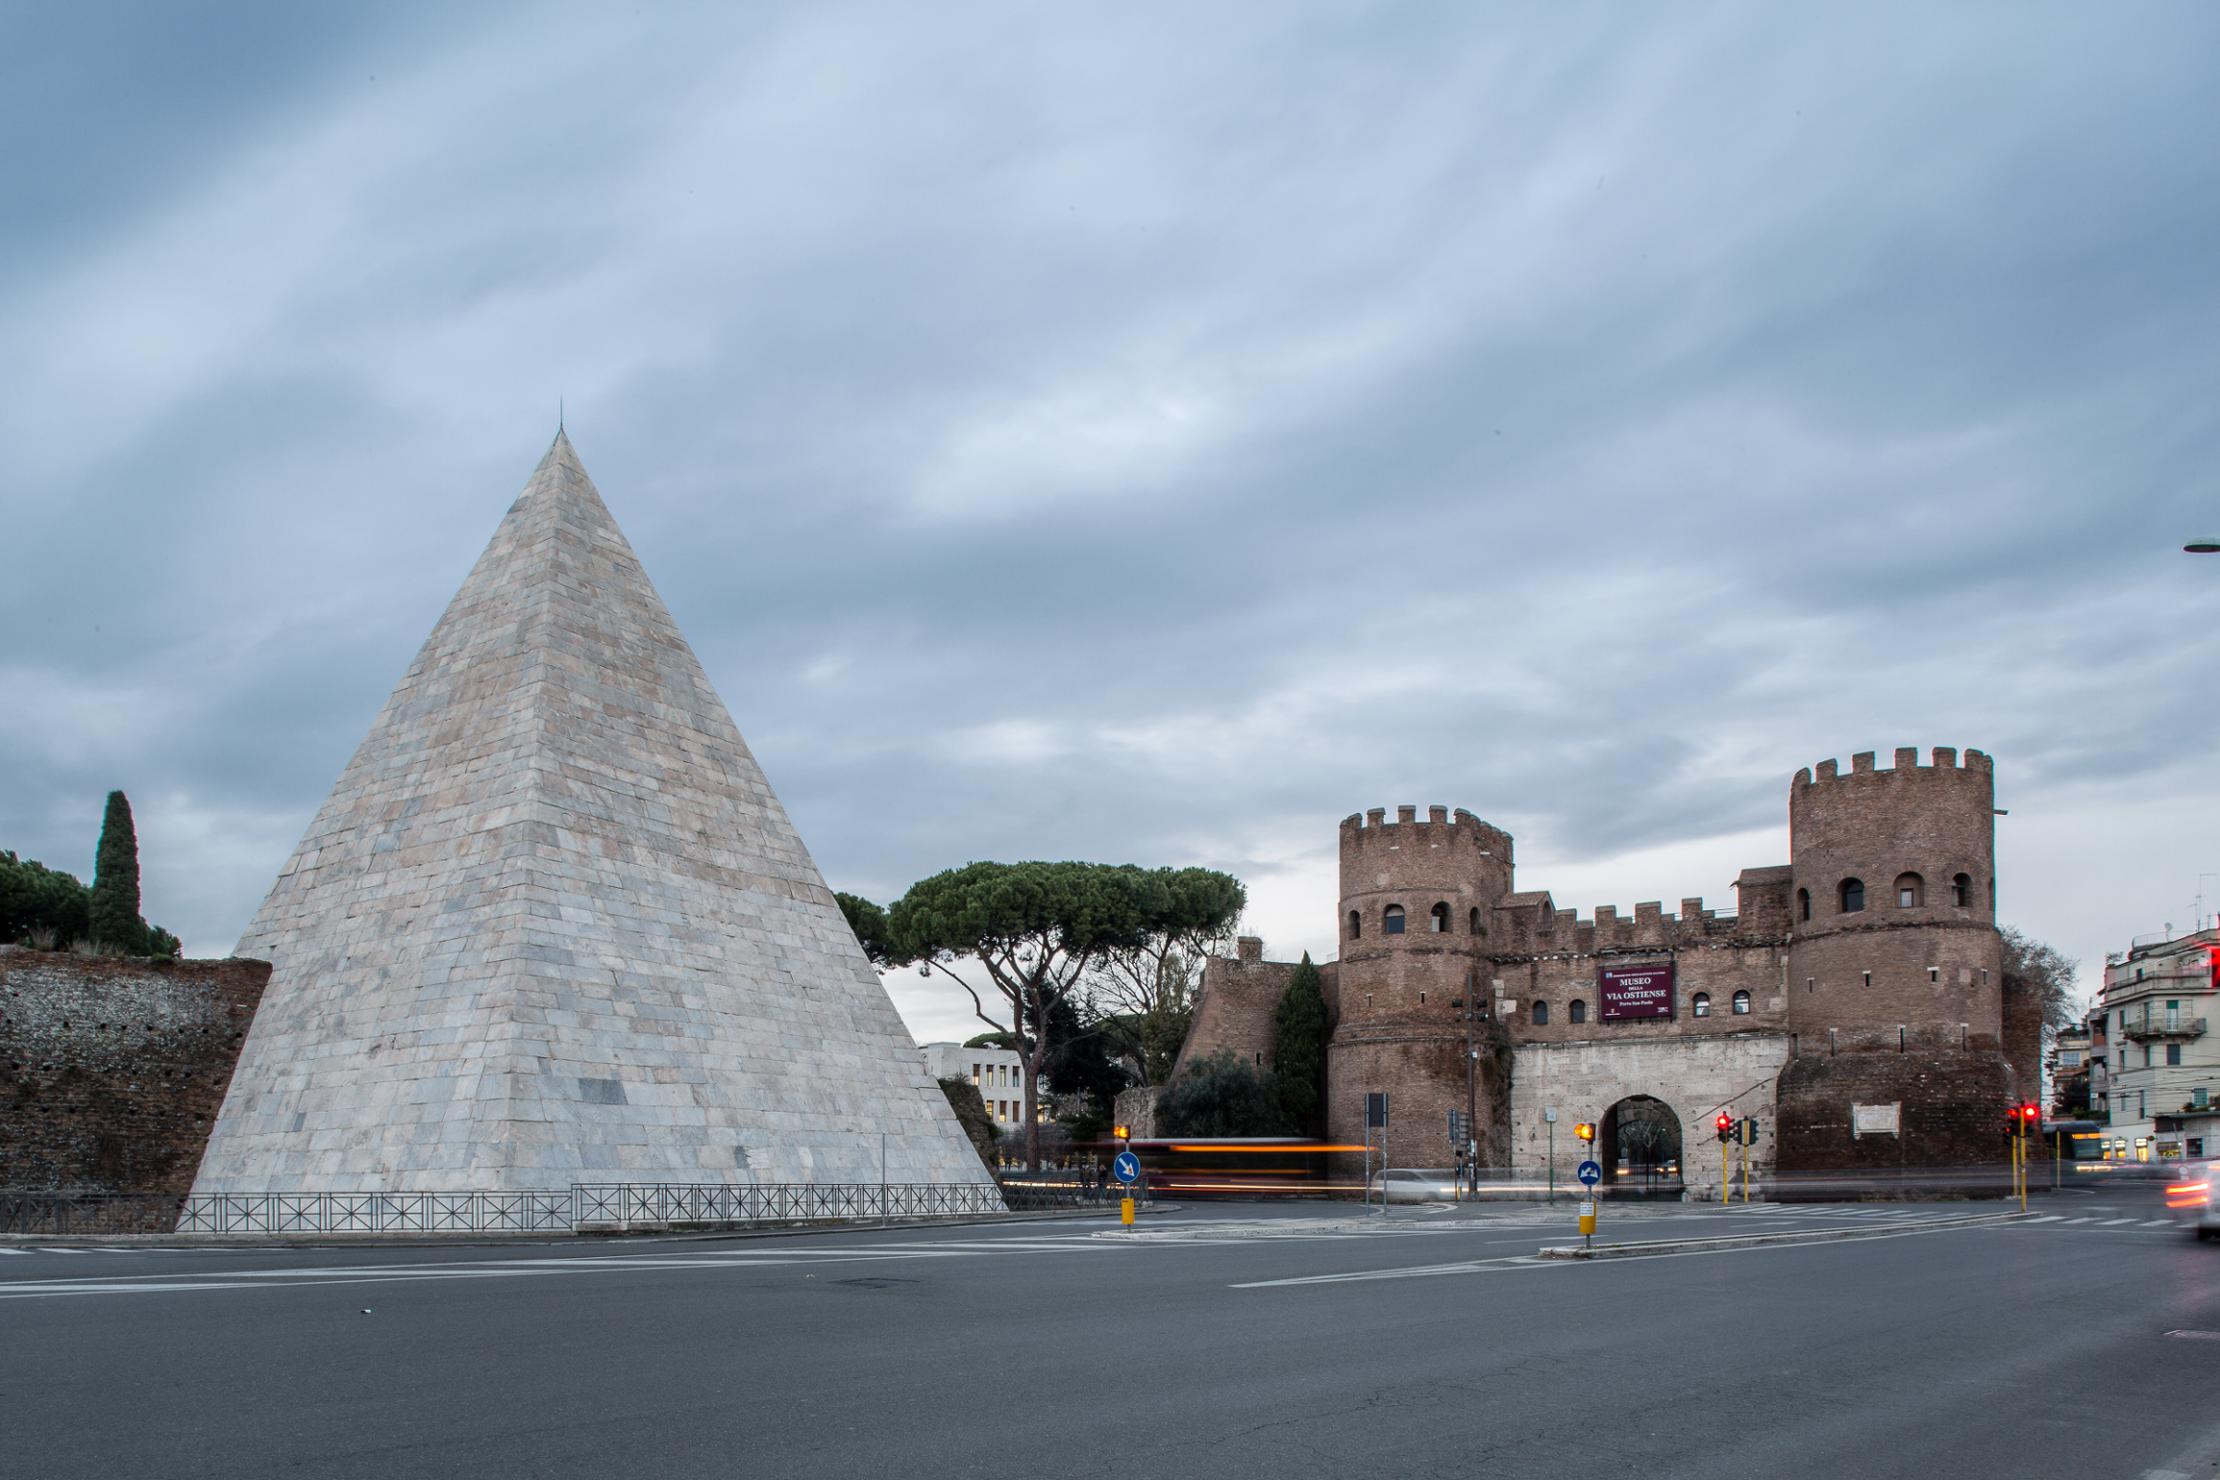 White Pyramid in Rome - European Heritage Awards / Europa Nostra Awards